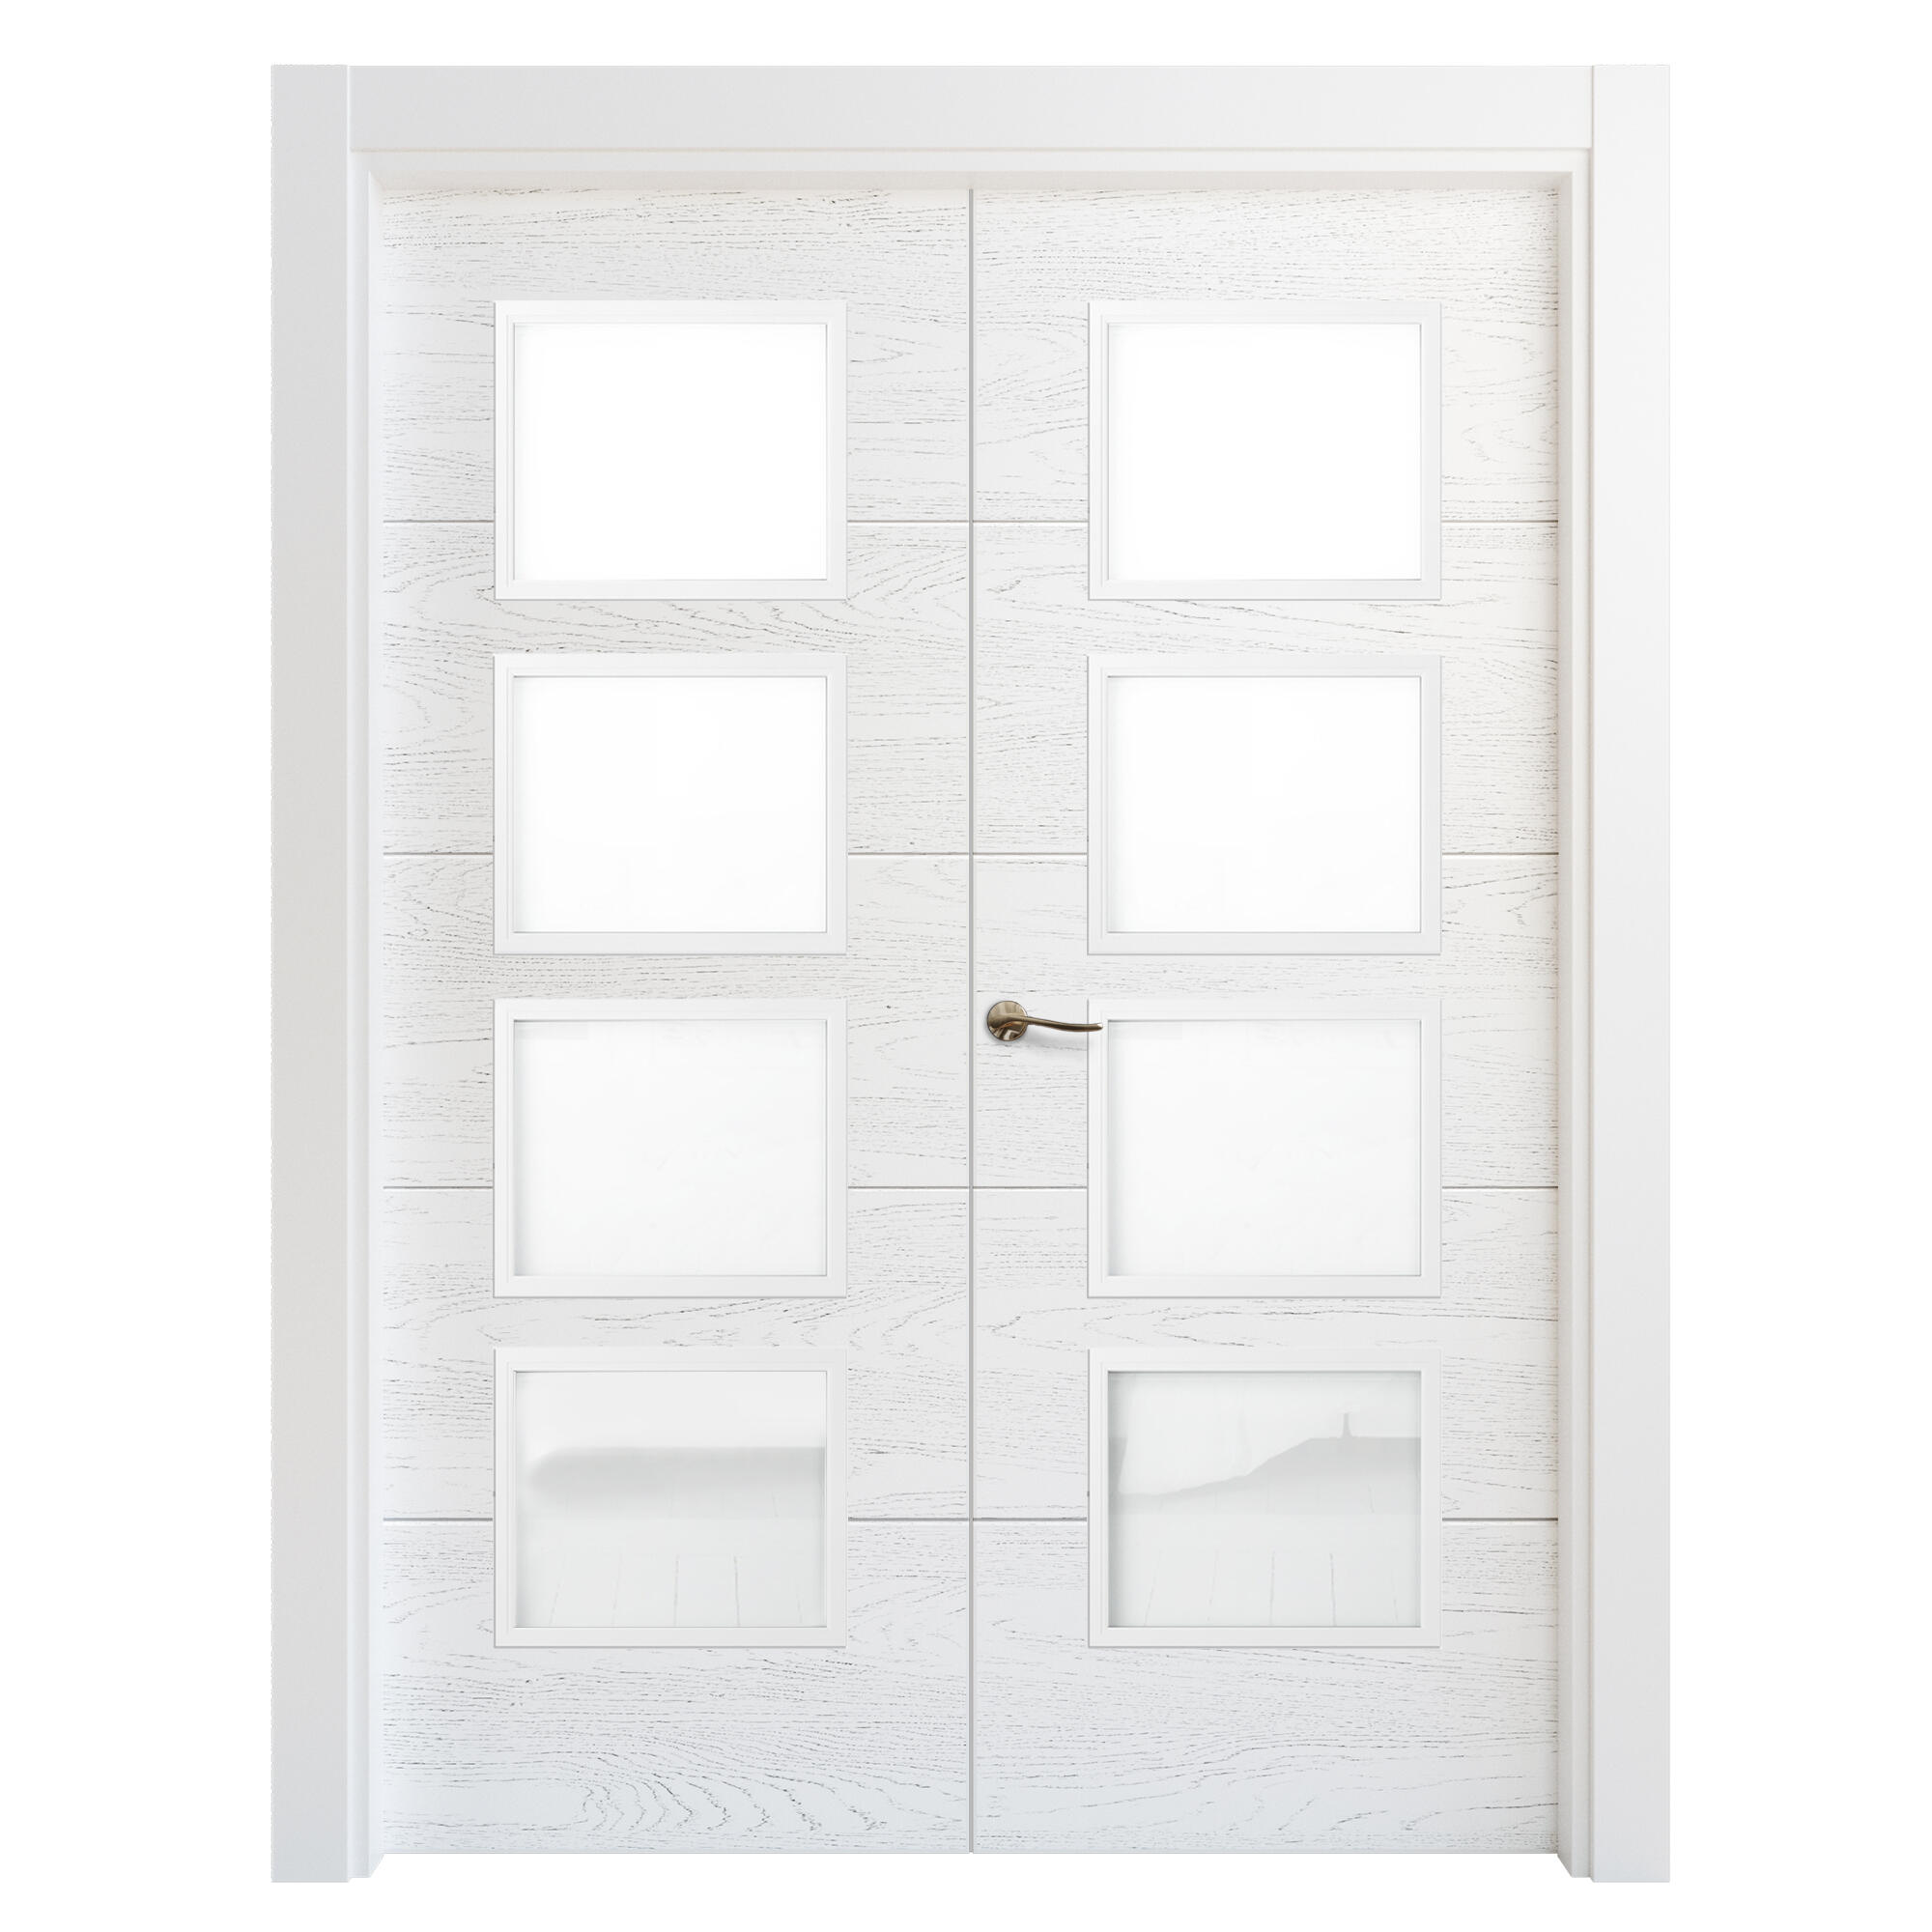 Puerta doble acristalada lucerna premium blanca i 7x145 cm